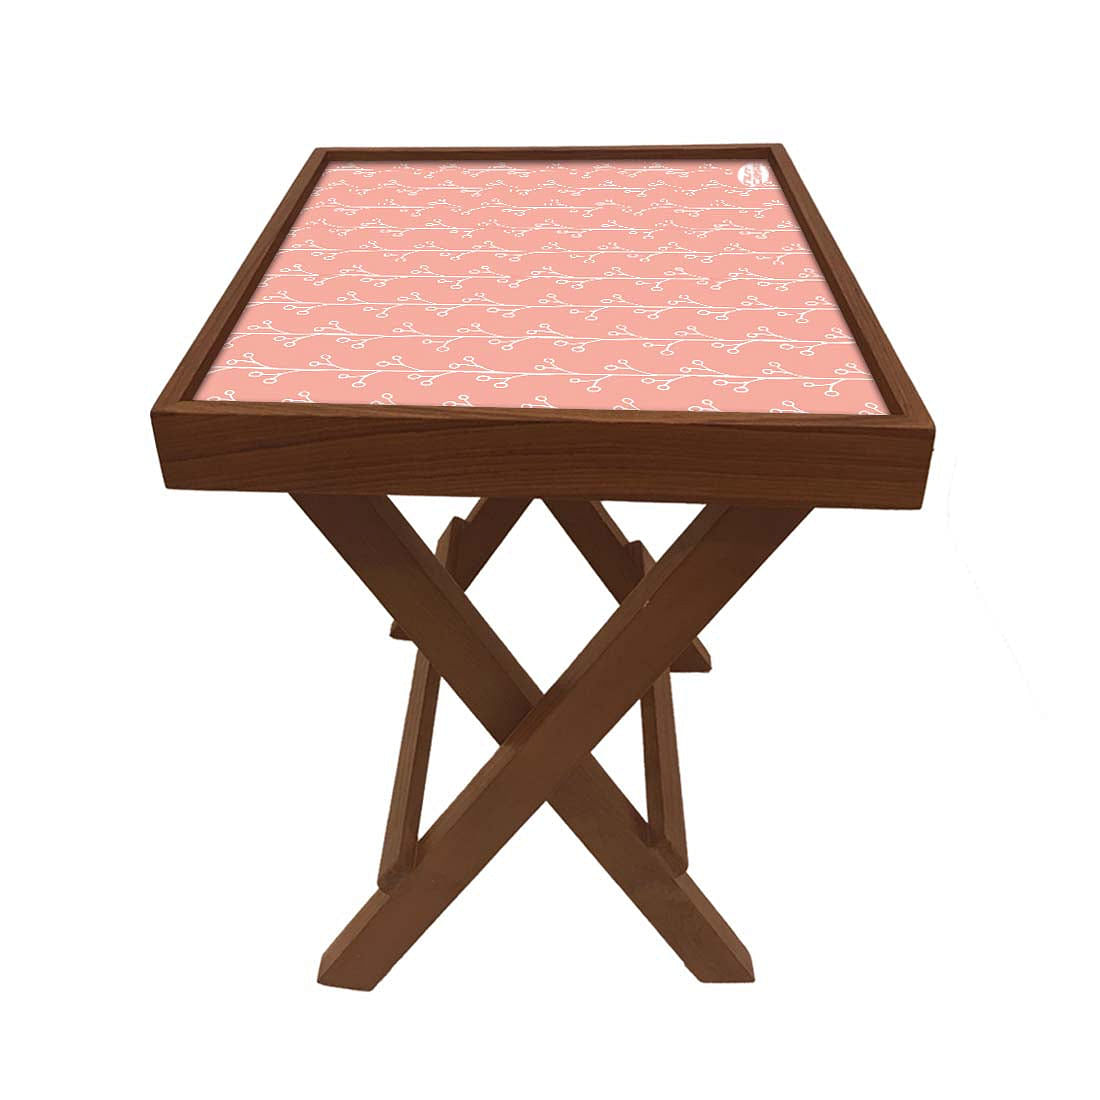 Folding Side Table - Teak Wood -Peach Patten Nutcase